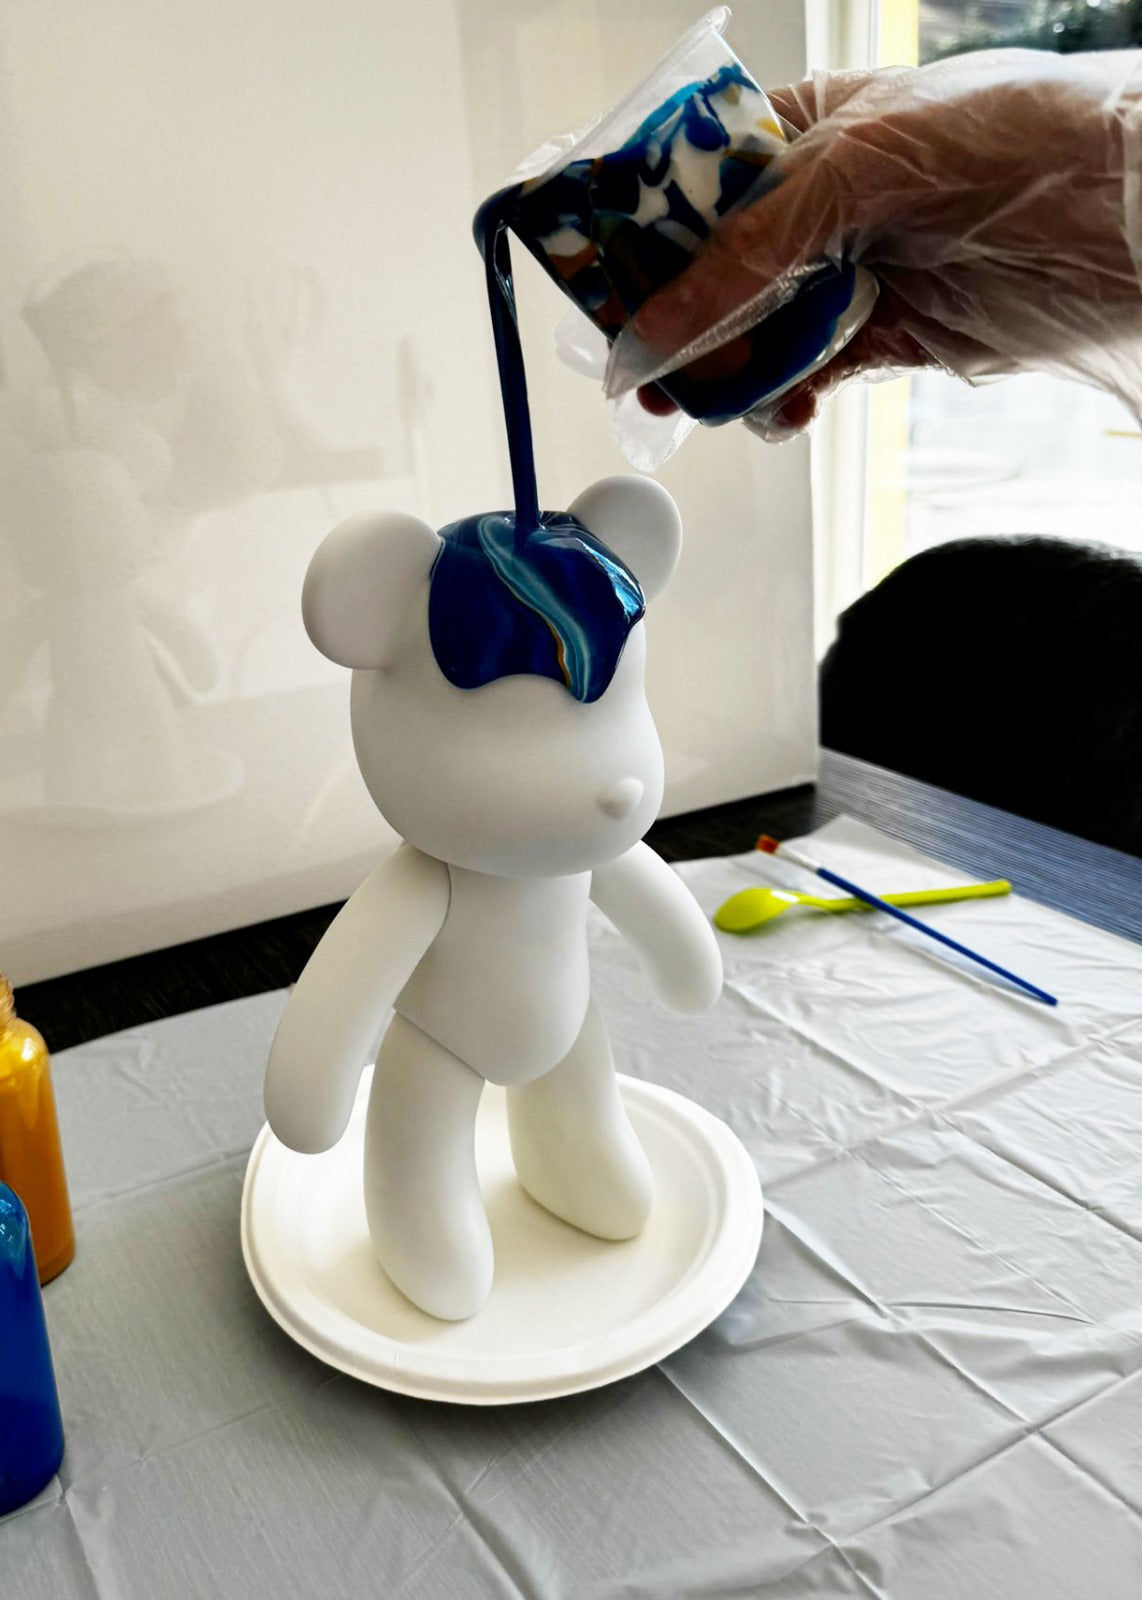 Kit de peinture pouring fluide art - Ours Teddy Bear Bleu / Blanc /Or JOY!